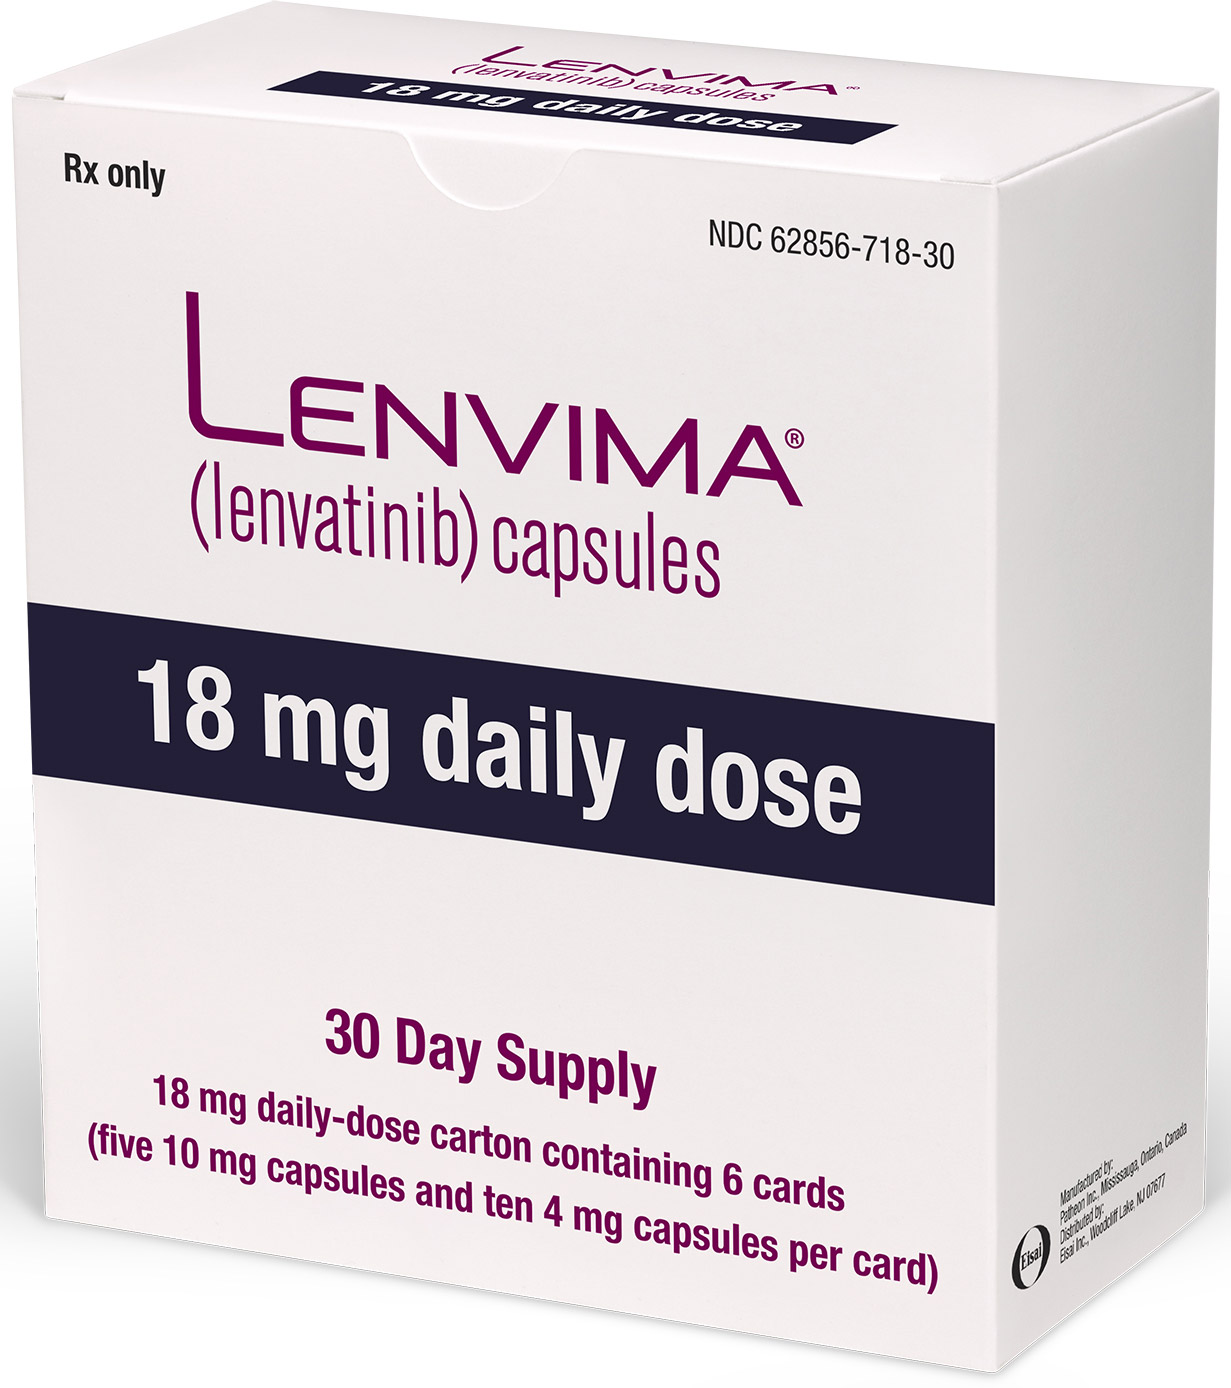 Упаковка препарата «Ленвима» (Lenvima, ленватиниб).